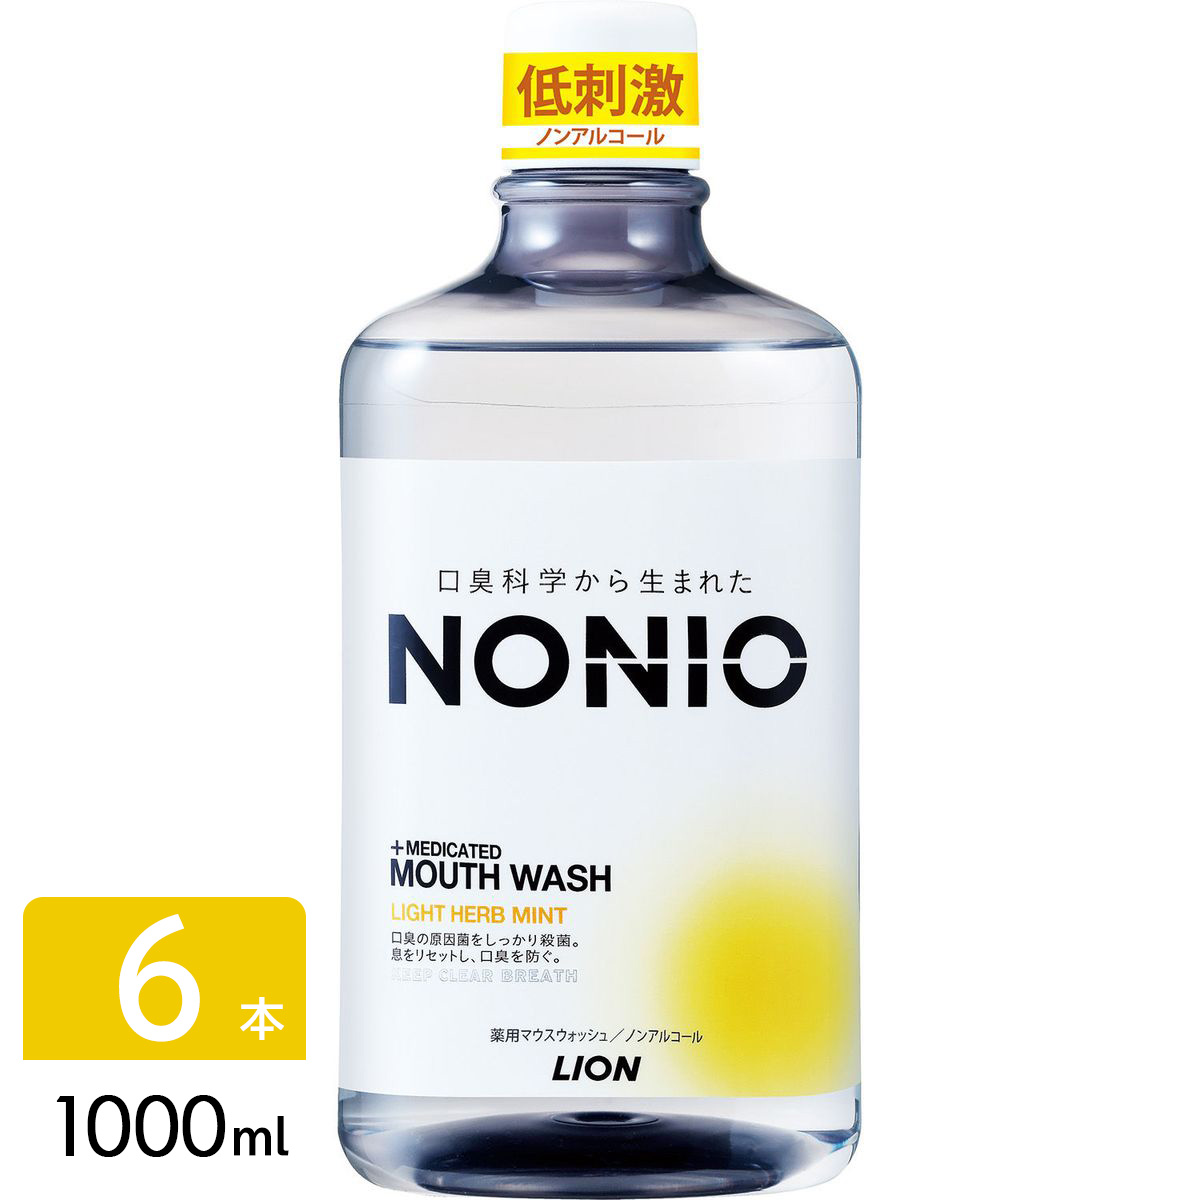 NONIO ノニオ マウスウォッシュ 洗口液 ノンアルコール ライトハーブミント 1000ml×6本